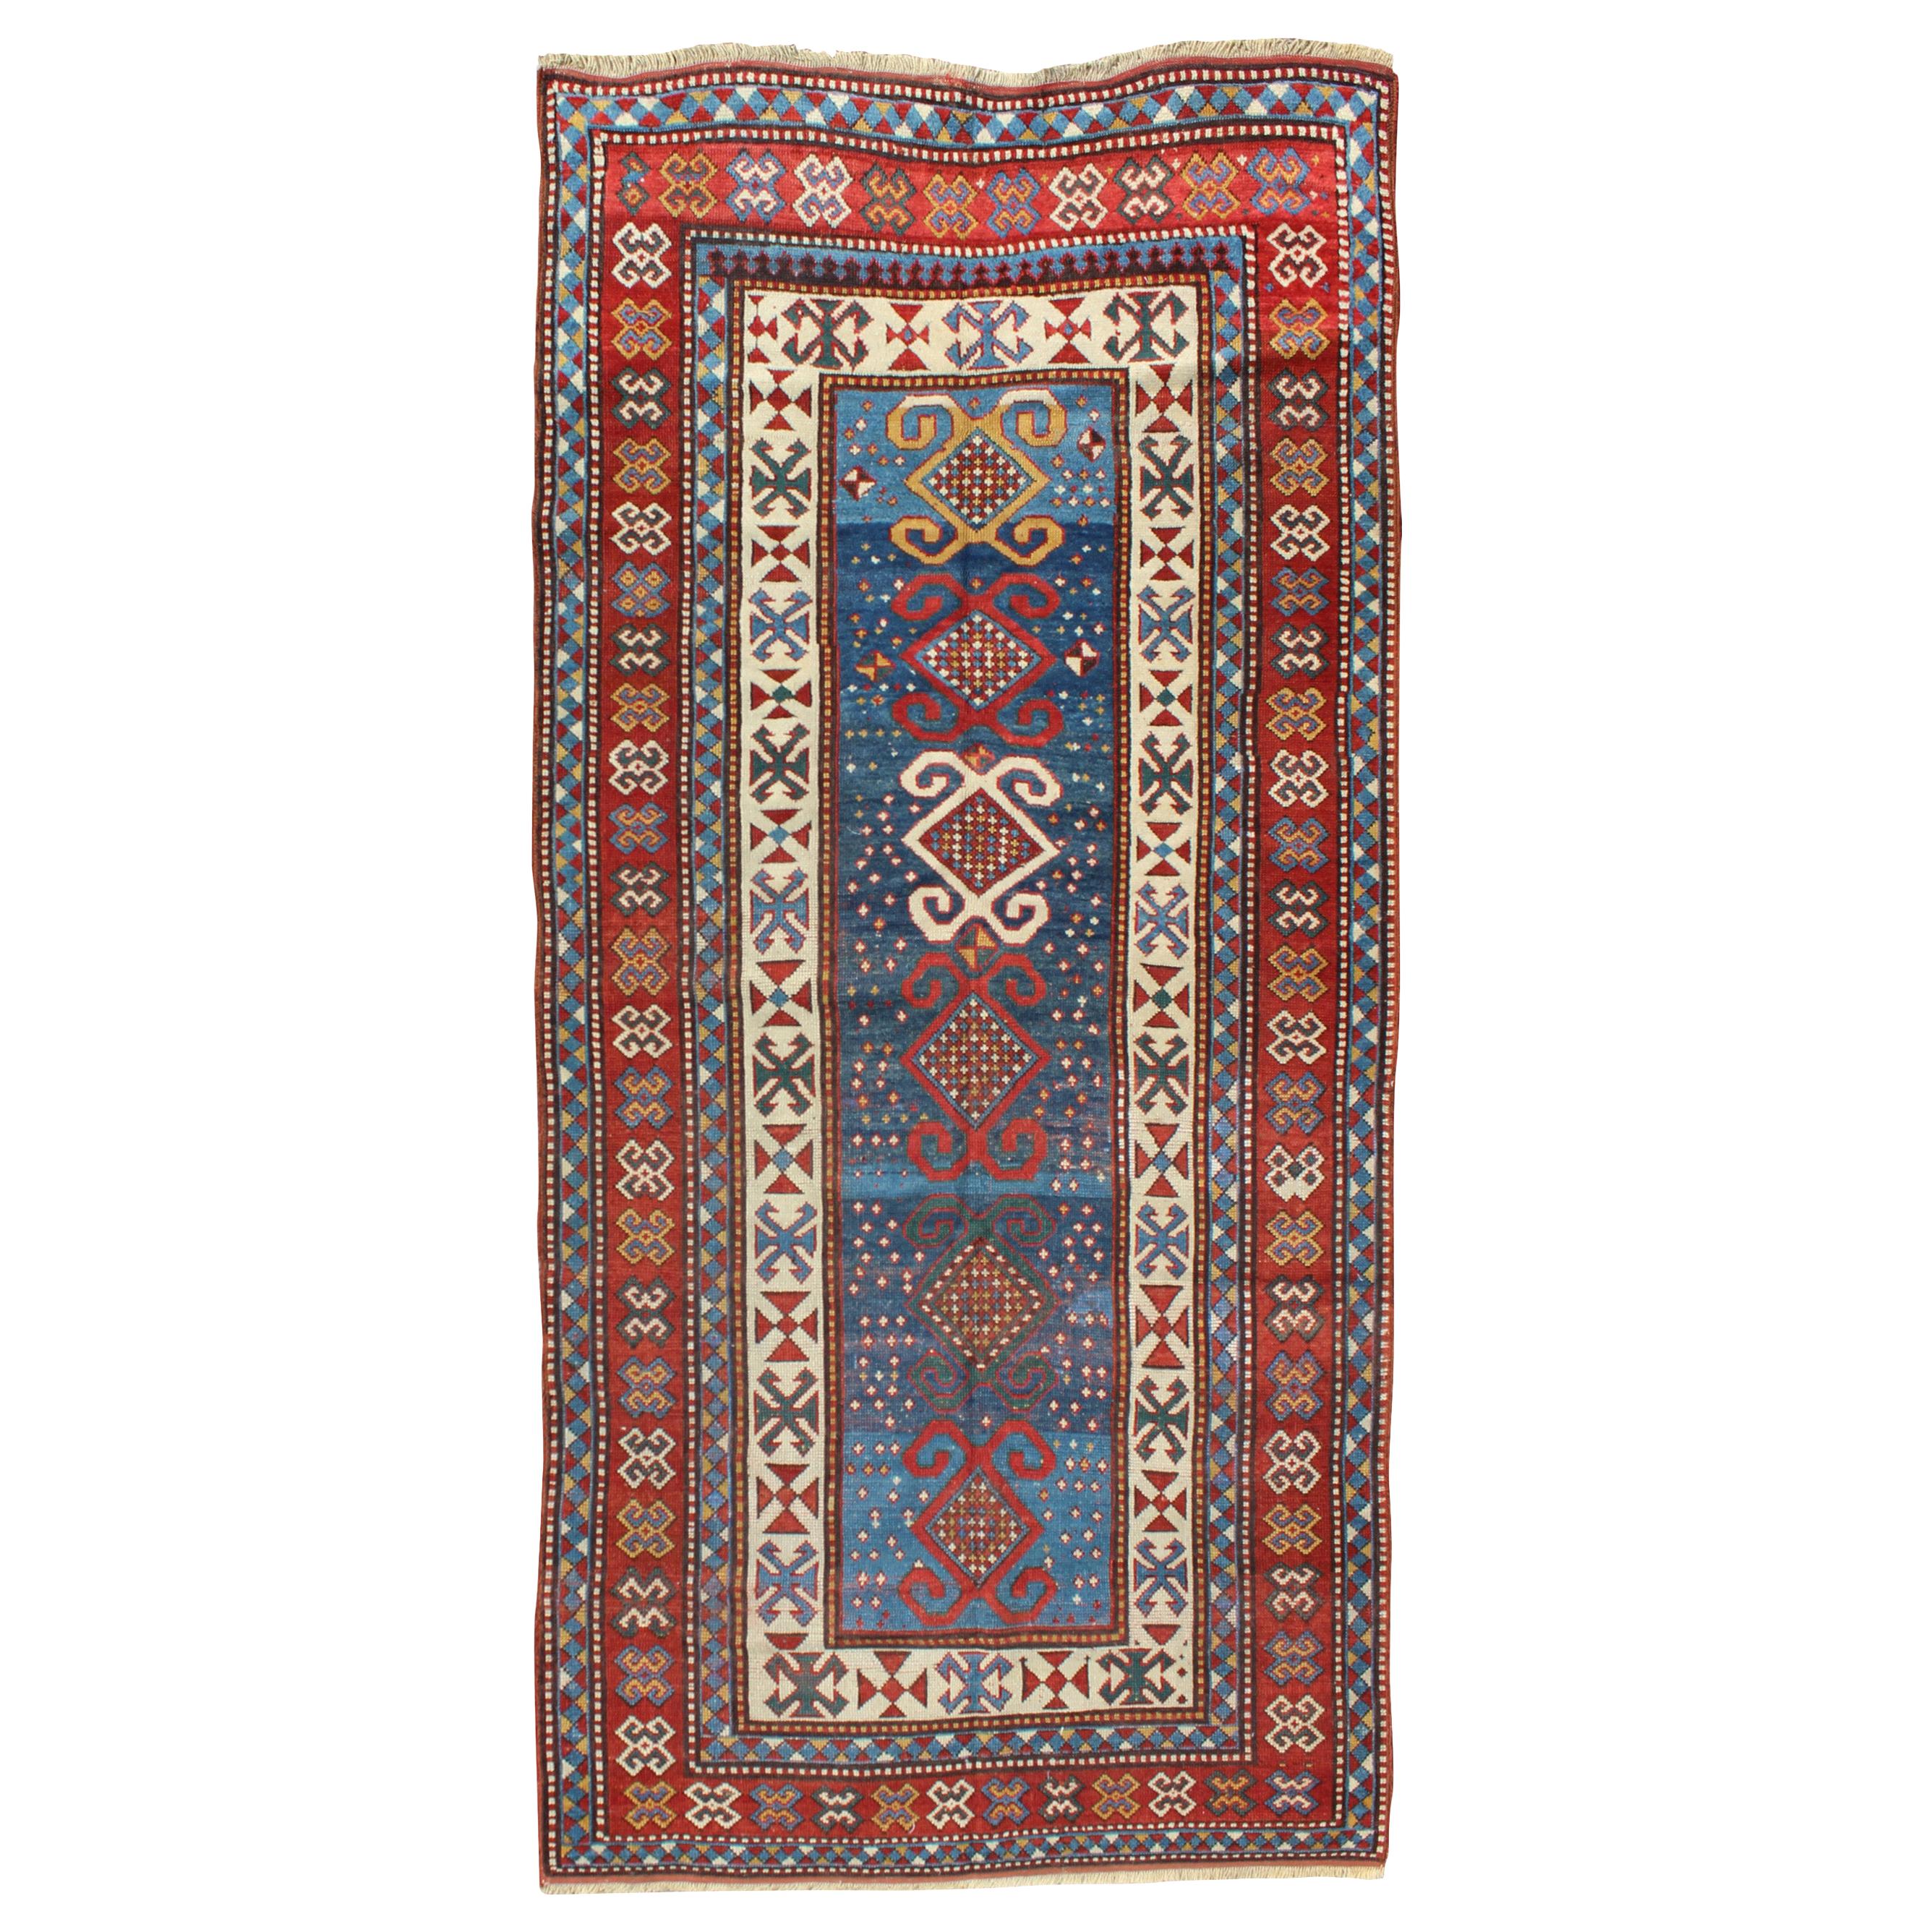 Roter und blauer antiker kaukasischer Kazak-Teppich mit vertikalen Stammesmedaillons